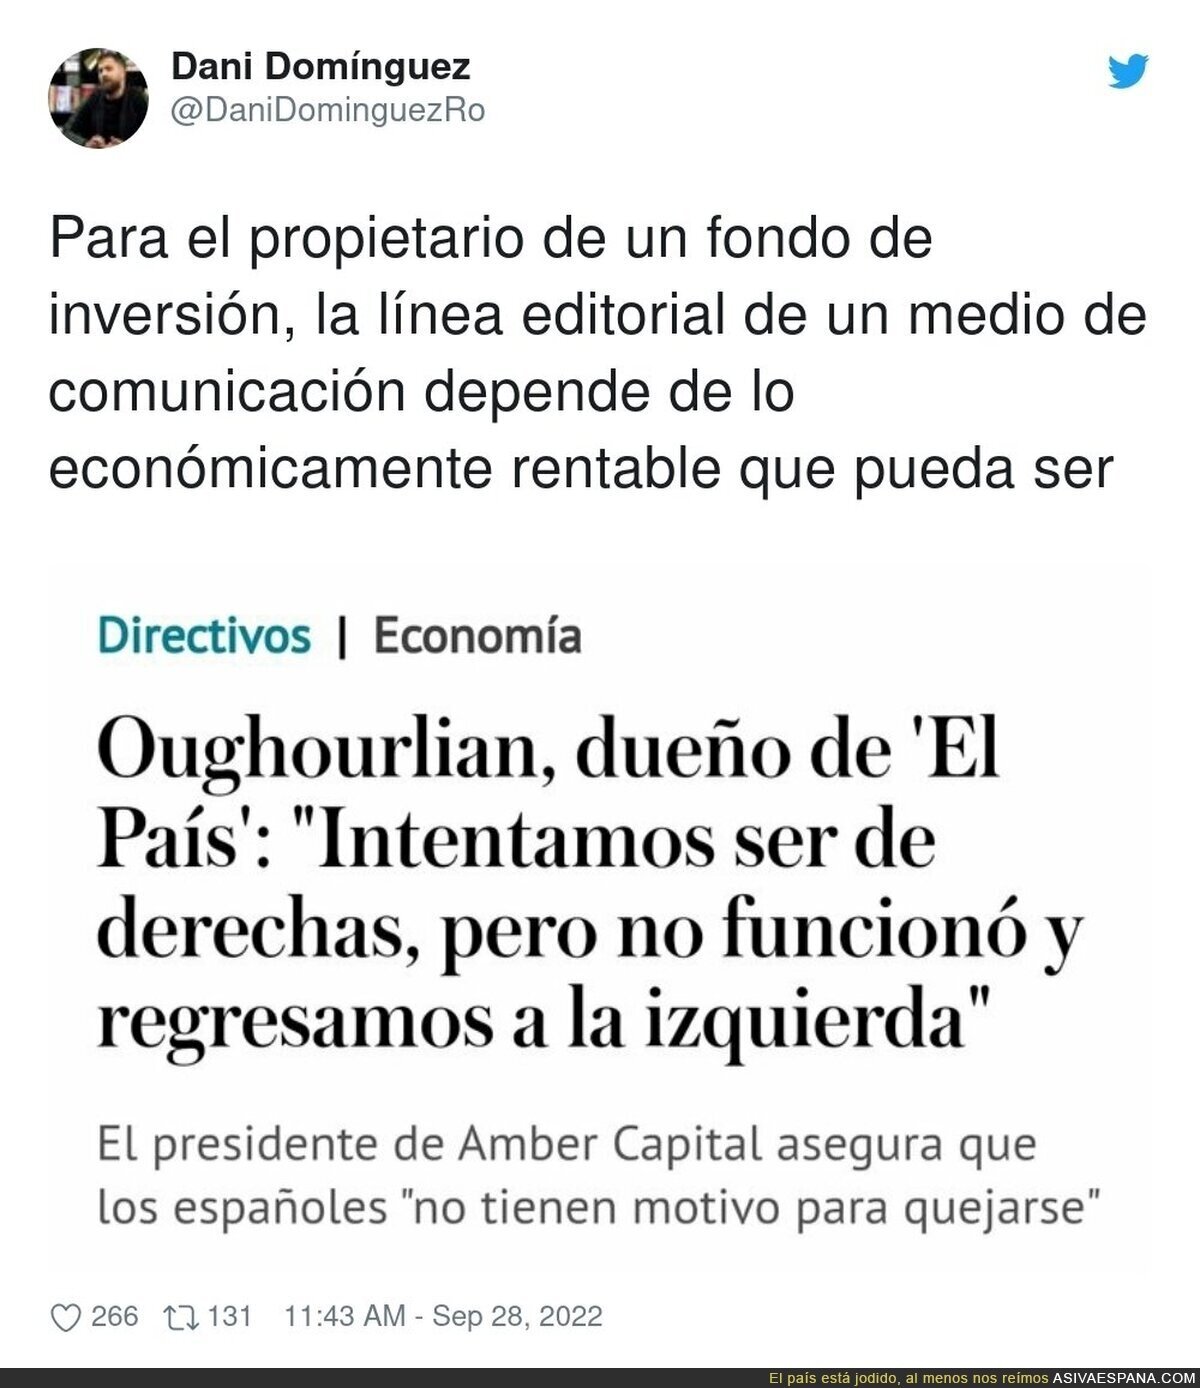 ´El funcionamiento de 'El País'